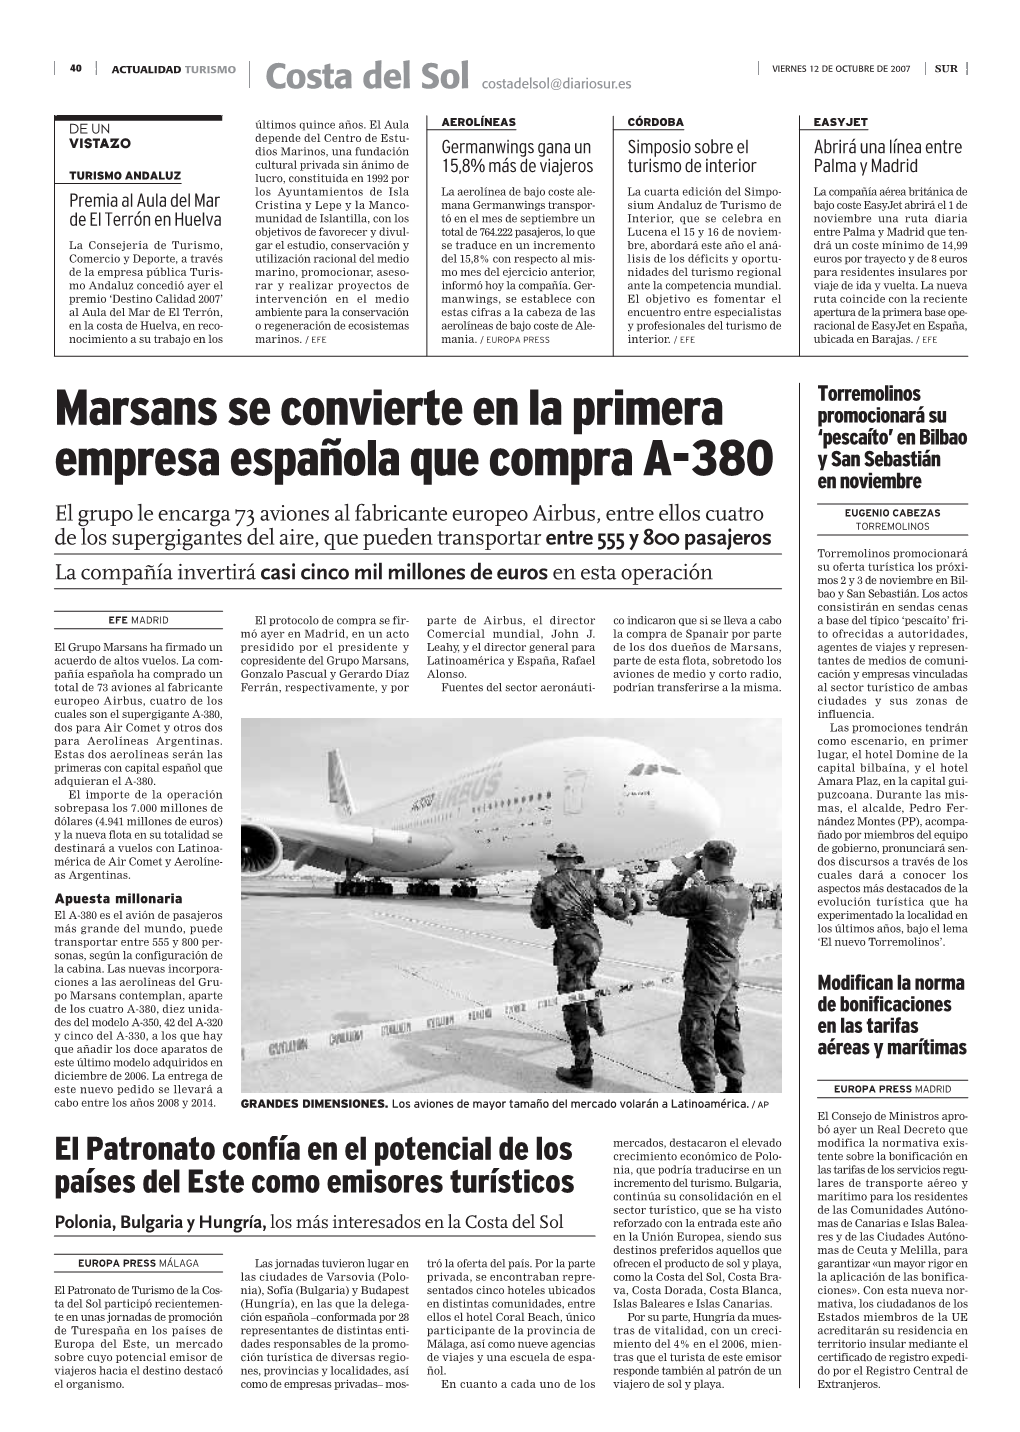 Marsans Se Convierte En La Primera Empresa Española Que Compra A-380